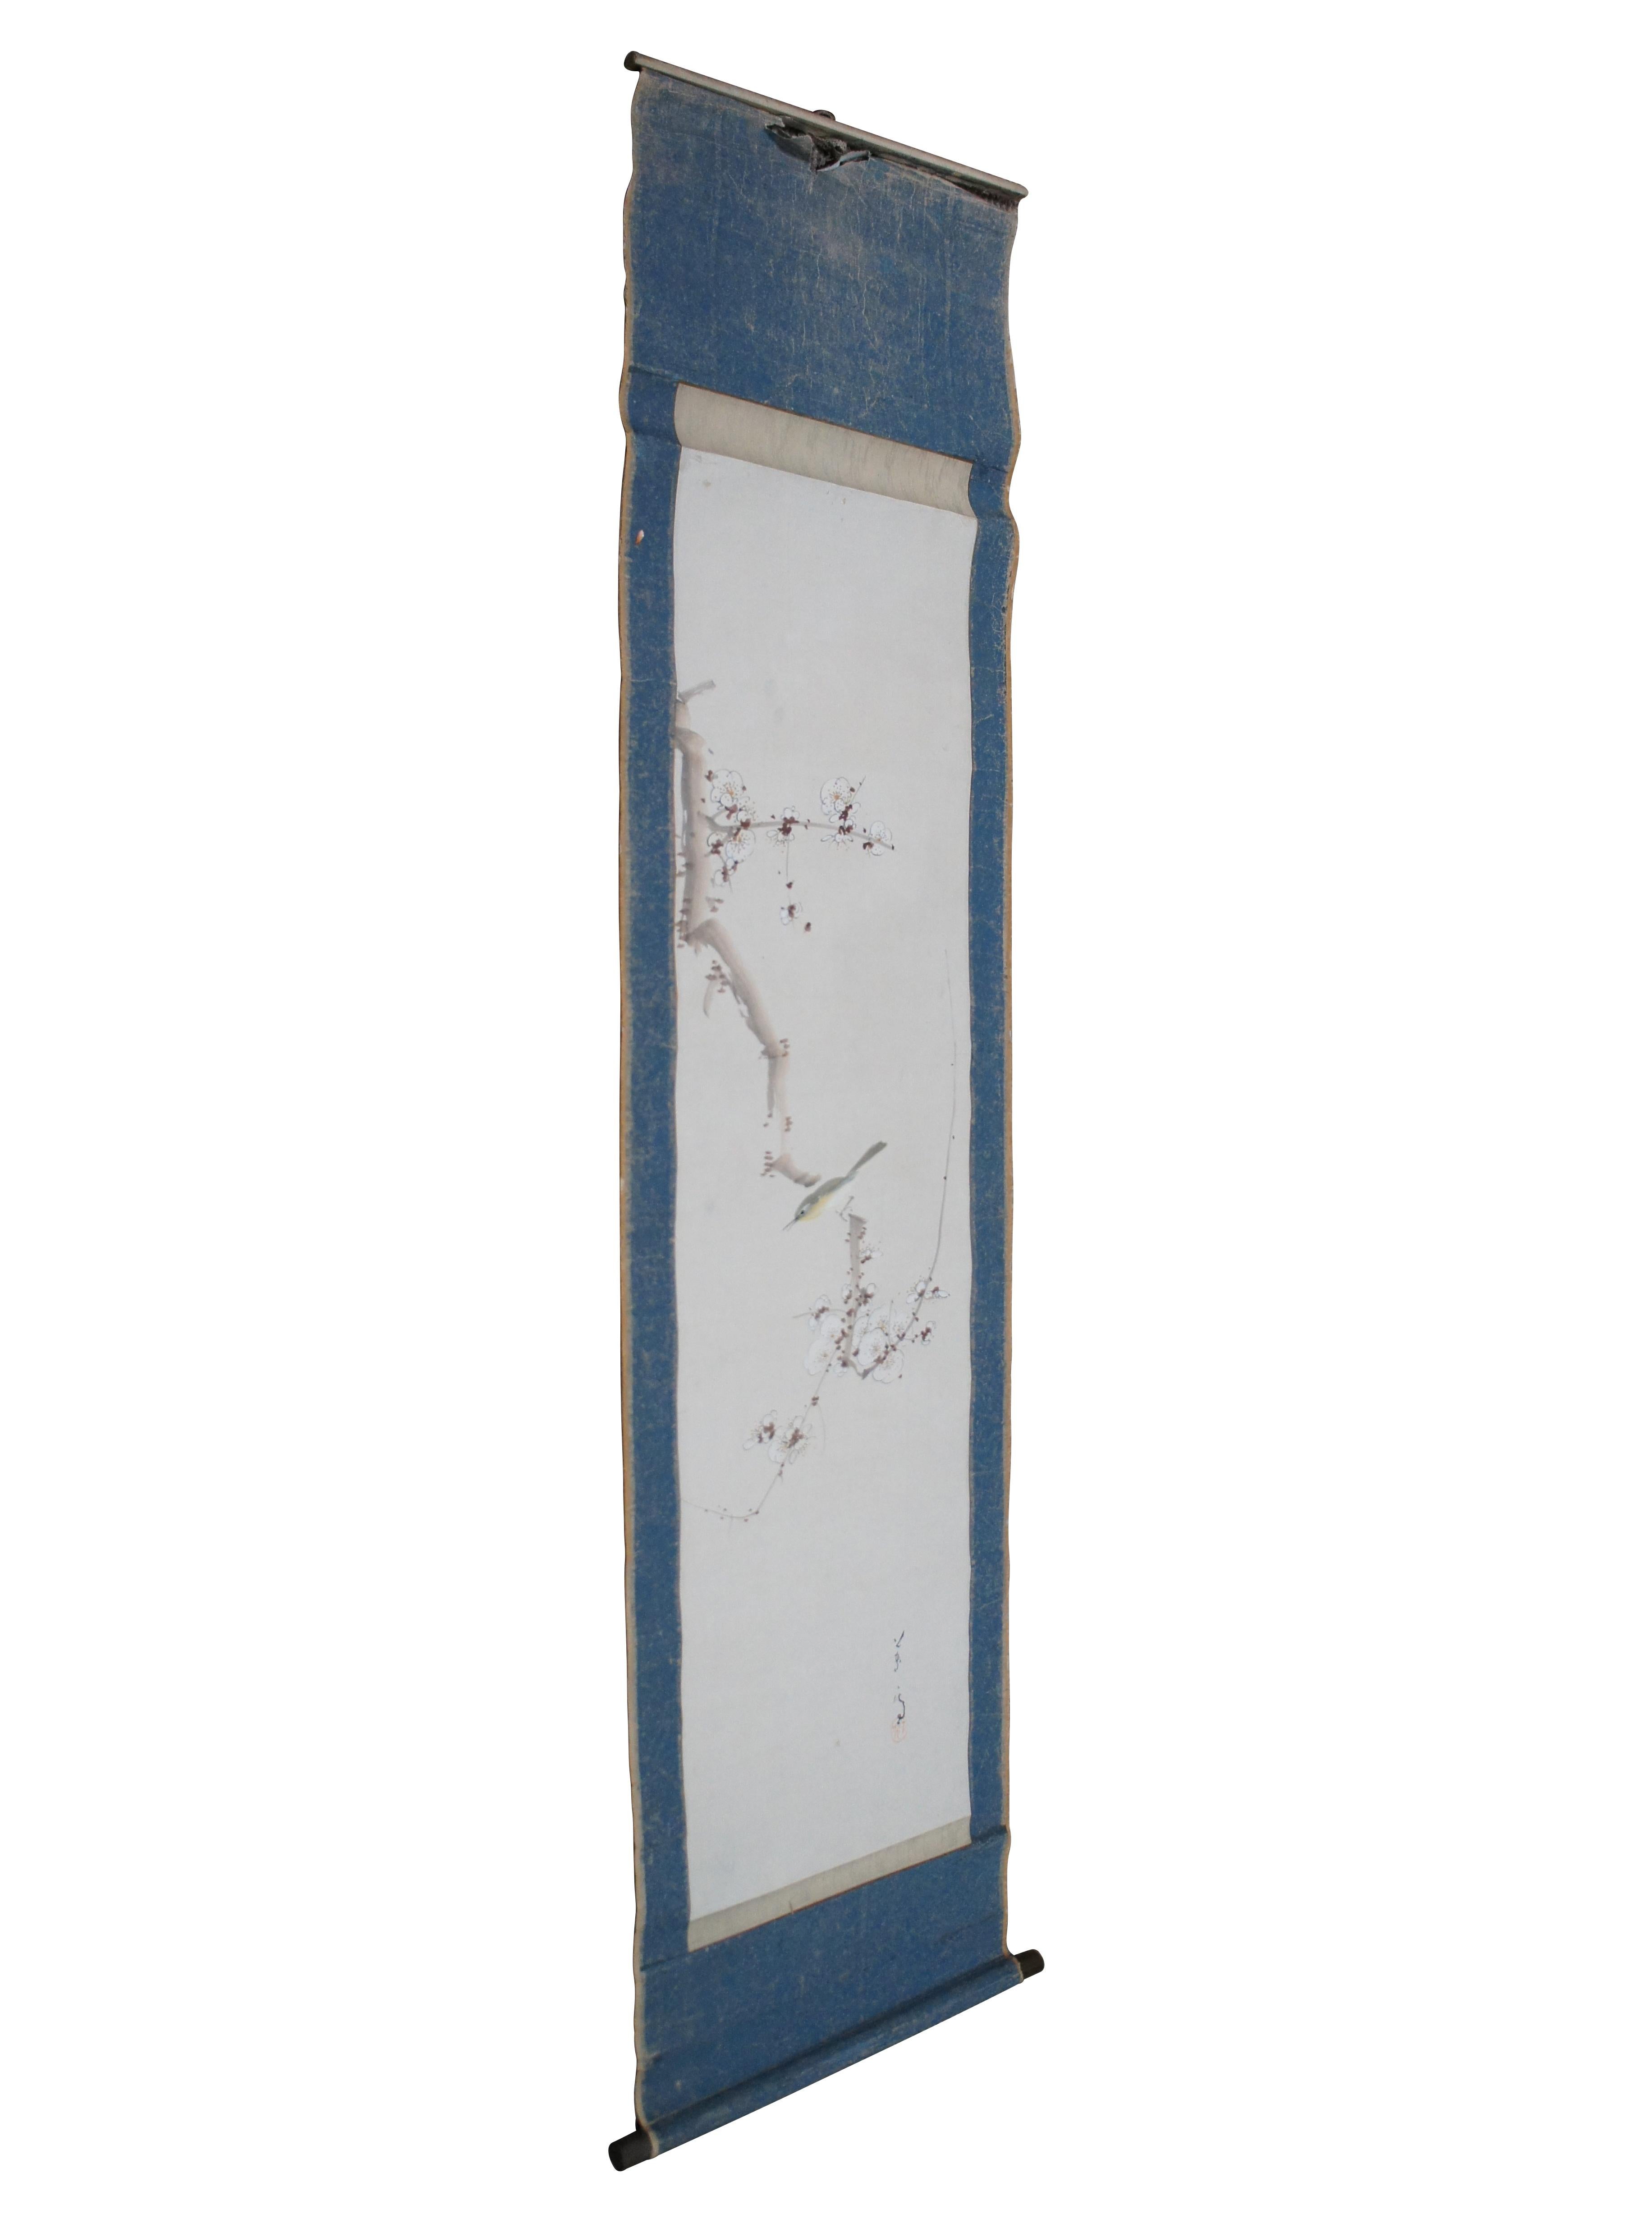 Aquarelle asiatique ancienne sur papier signée, peinture minimaliste représentant un oiseau perché sur la branche d'un cerisier en fleurs. Monté sur un rouleau bleu à suspendre au mur.

??/guang xue/ : neige brillante, ou 